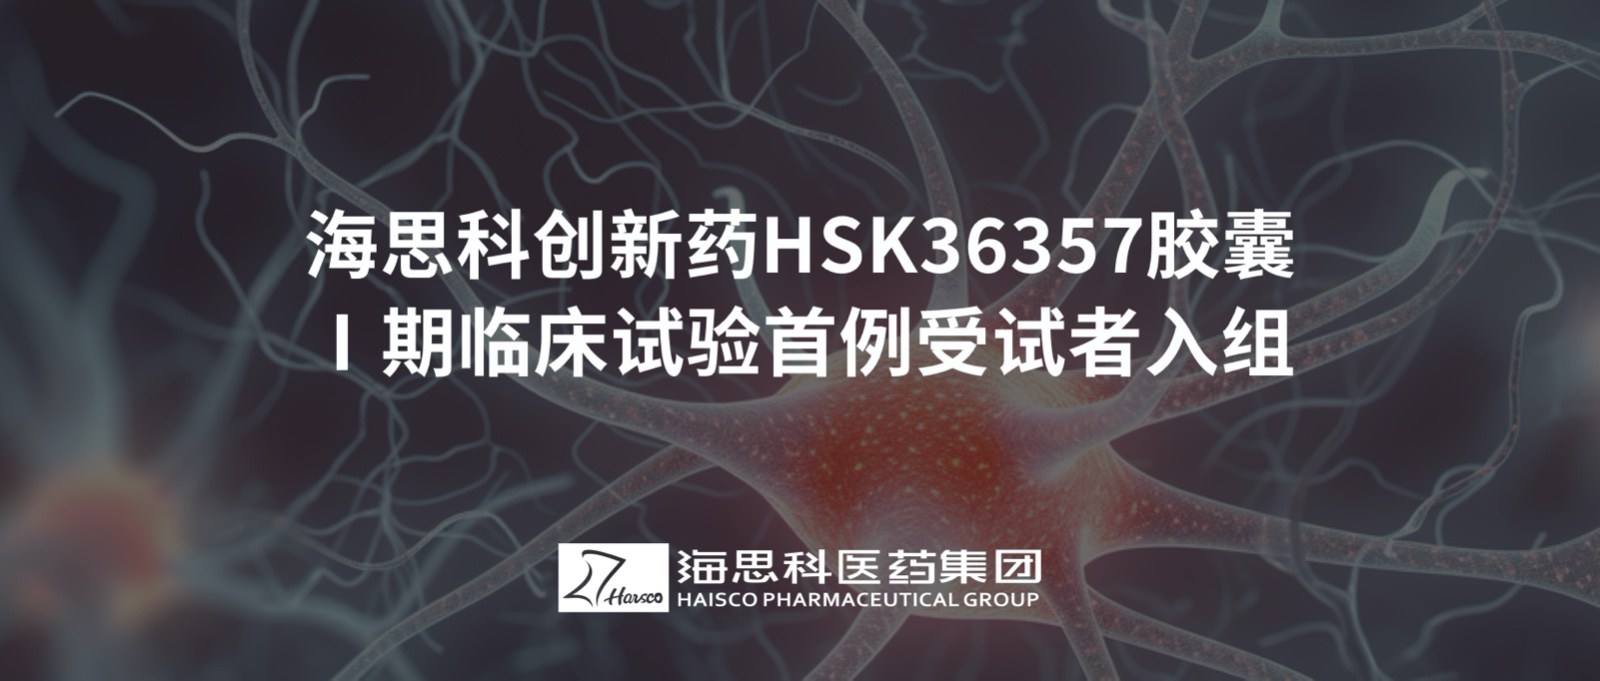 金沙娱app下载9570-最新地址创新药HSK36357胶囊Ⅰ期临床试验首例受试者入组